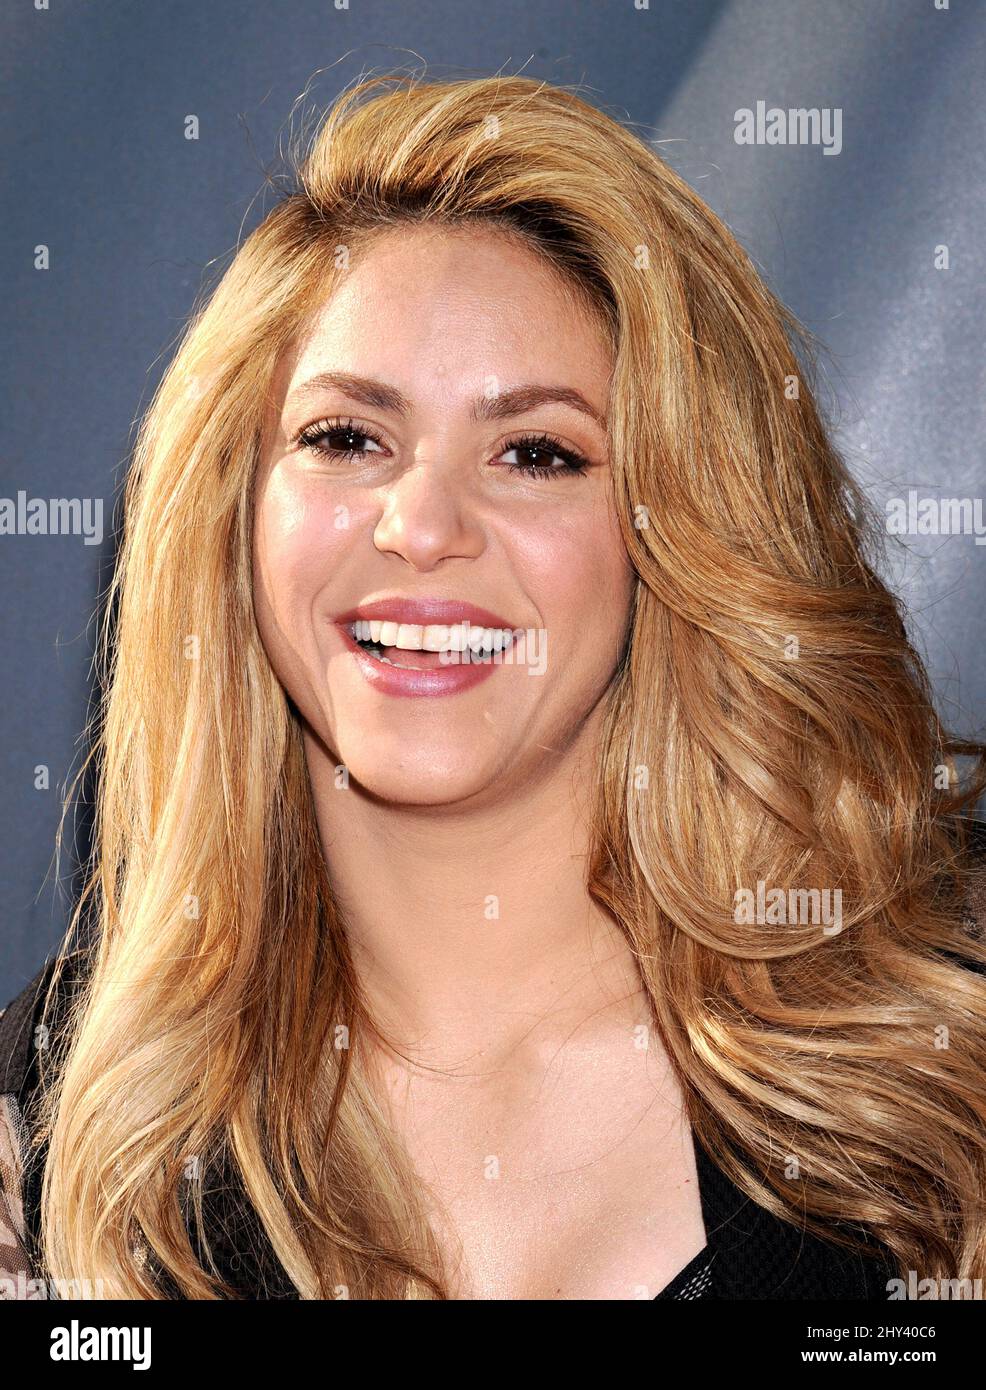 Shakira partecipa all'evento "The Voice" Red carpet della NBC che si tiene al Sayers Club Foto Stock